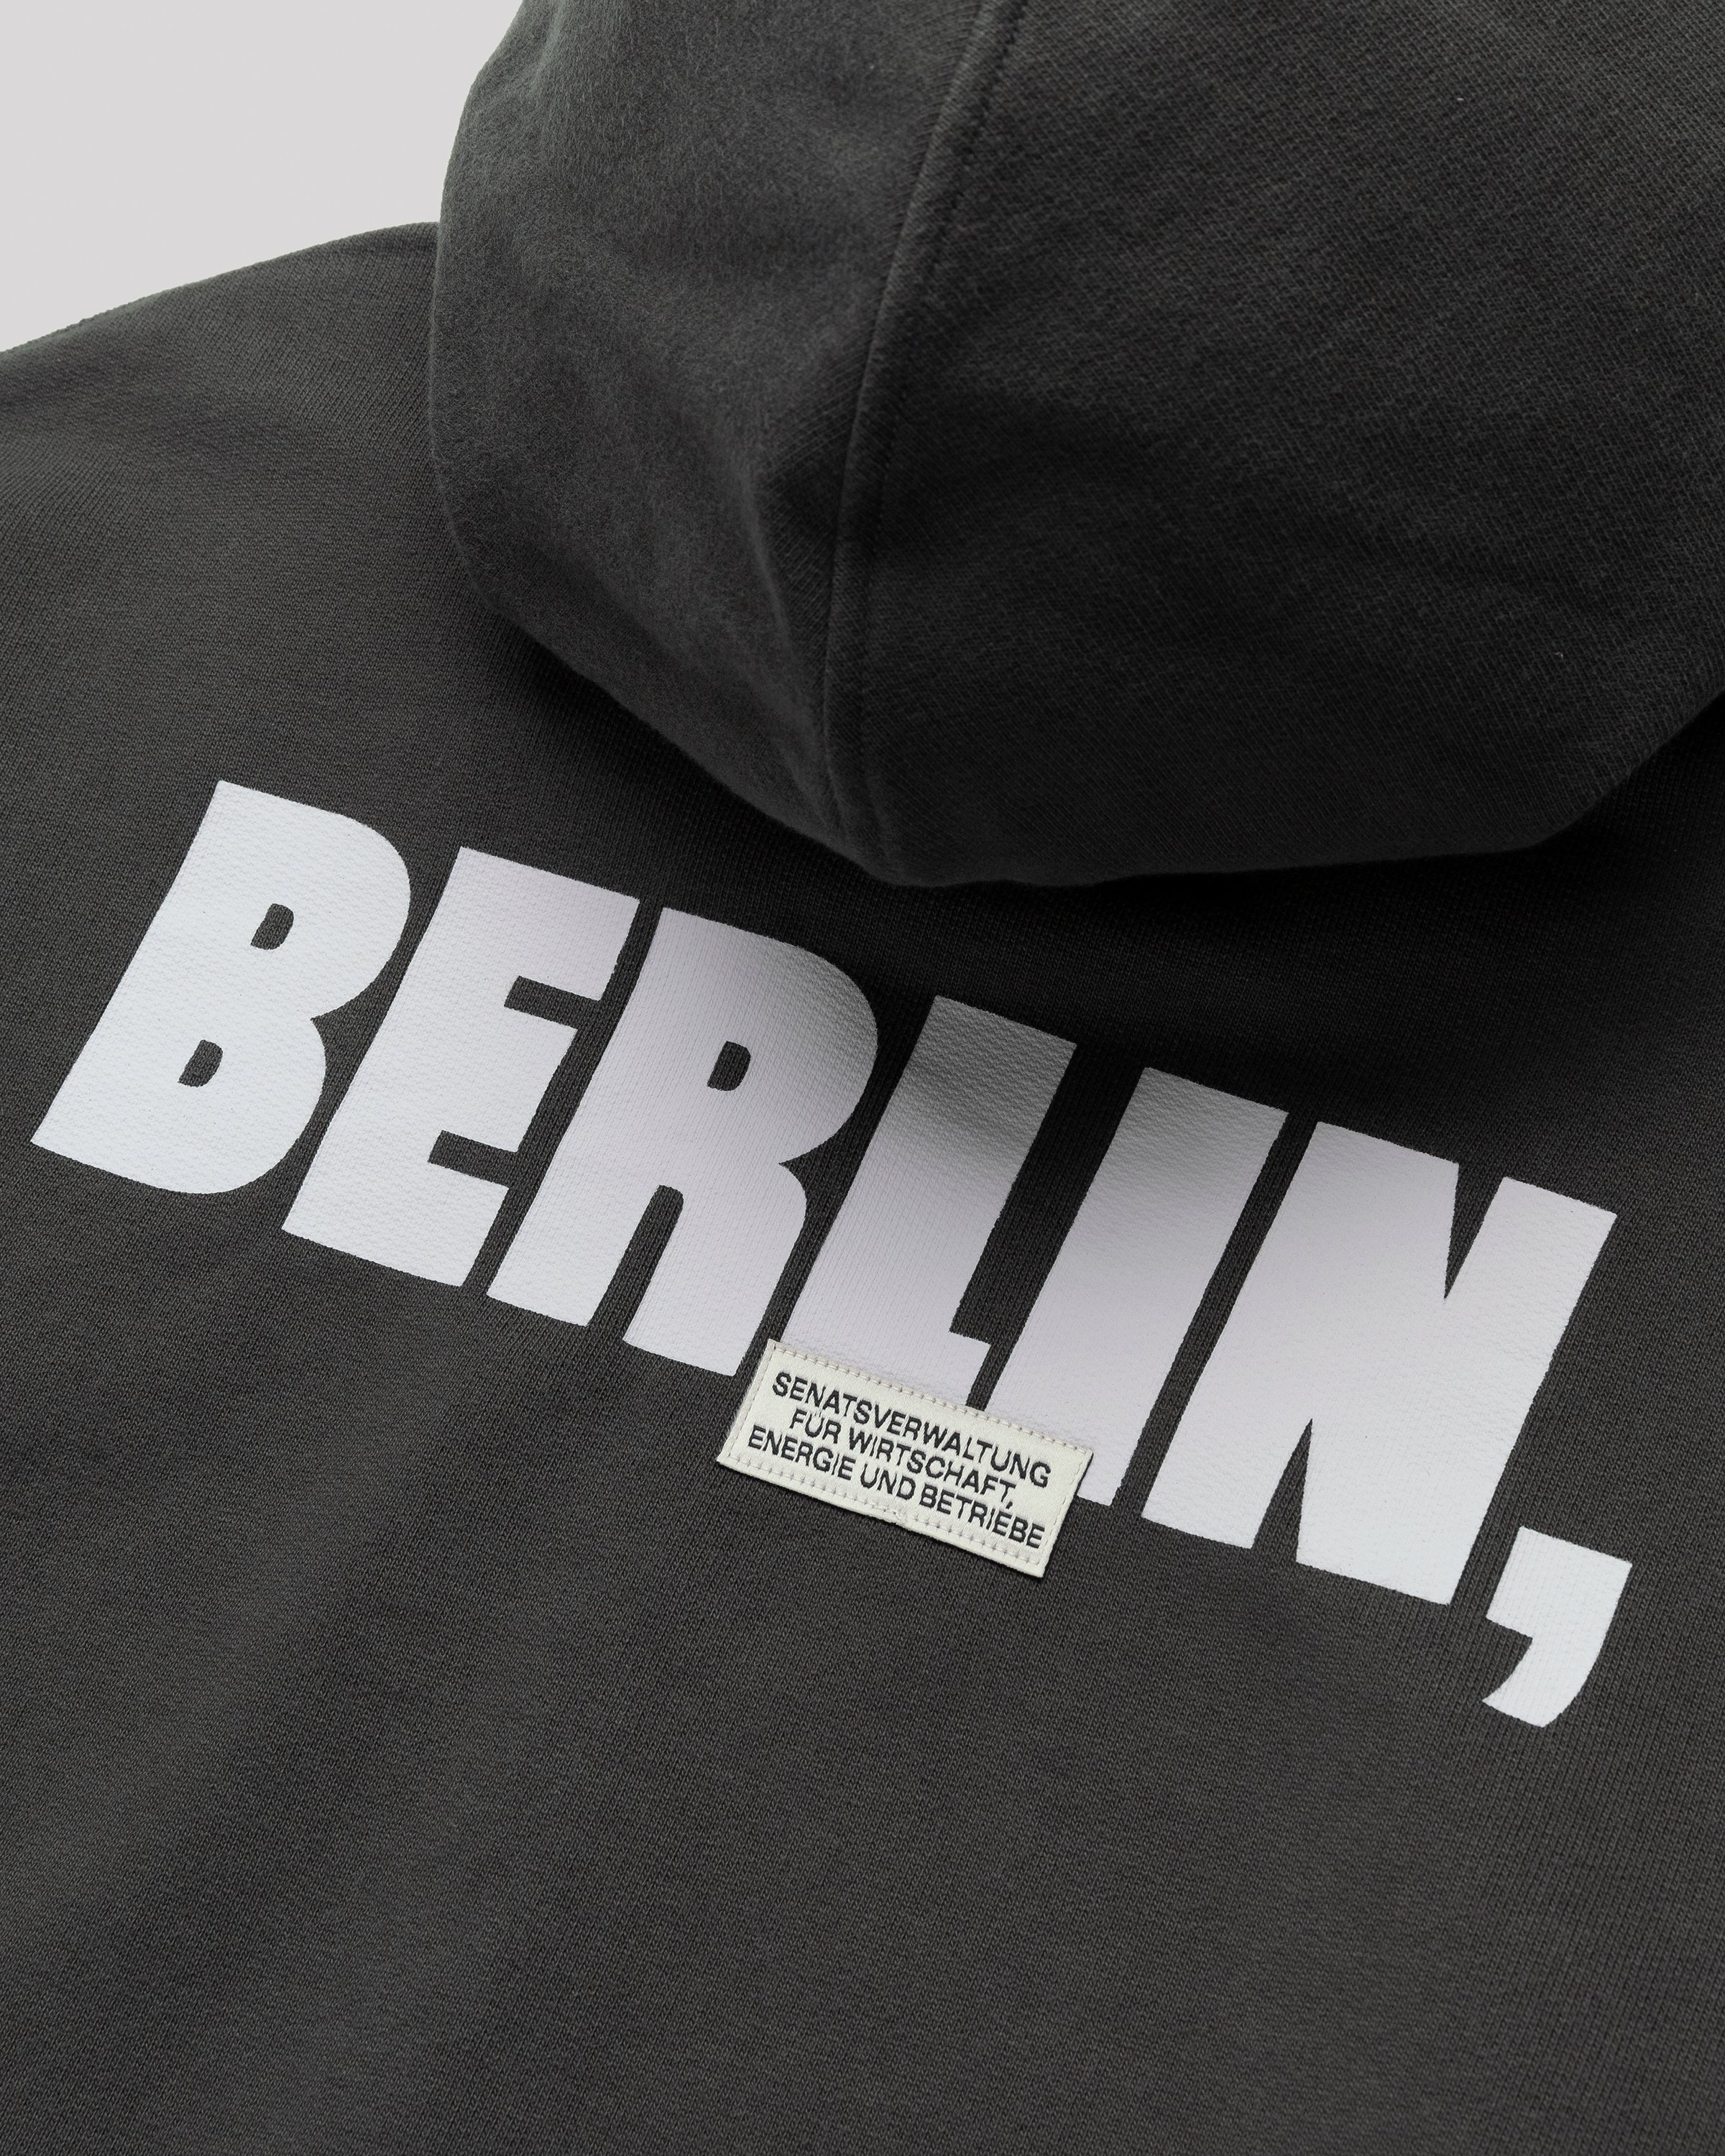 Highsnobiety - BERLIN, BERLIN 3 Zip Hoodie Black - Clothing - Black - Image 3